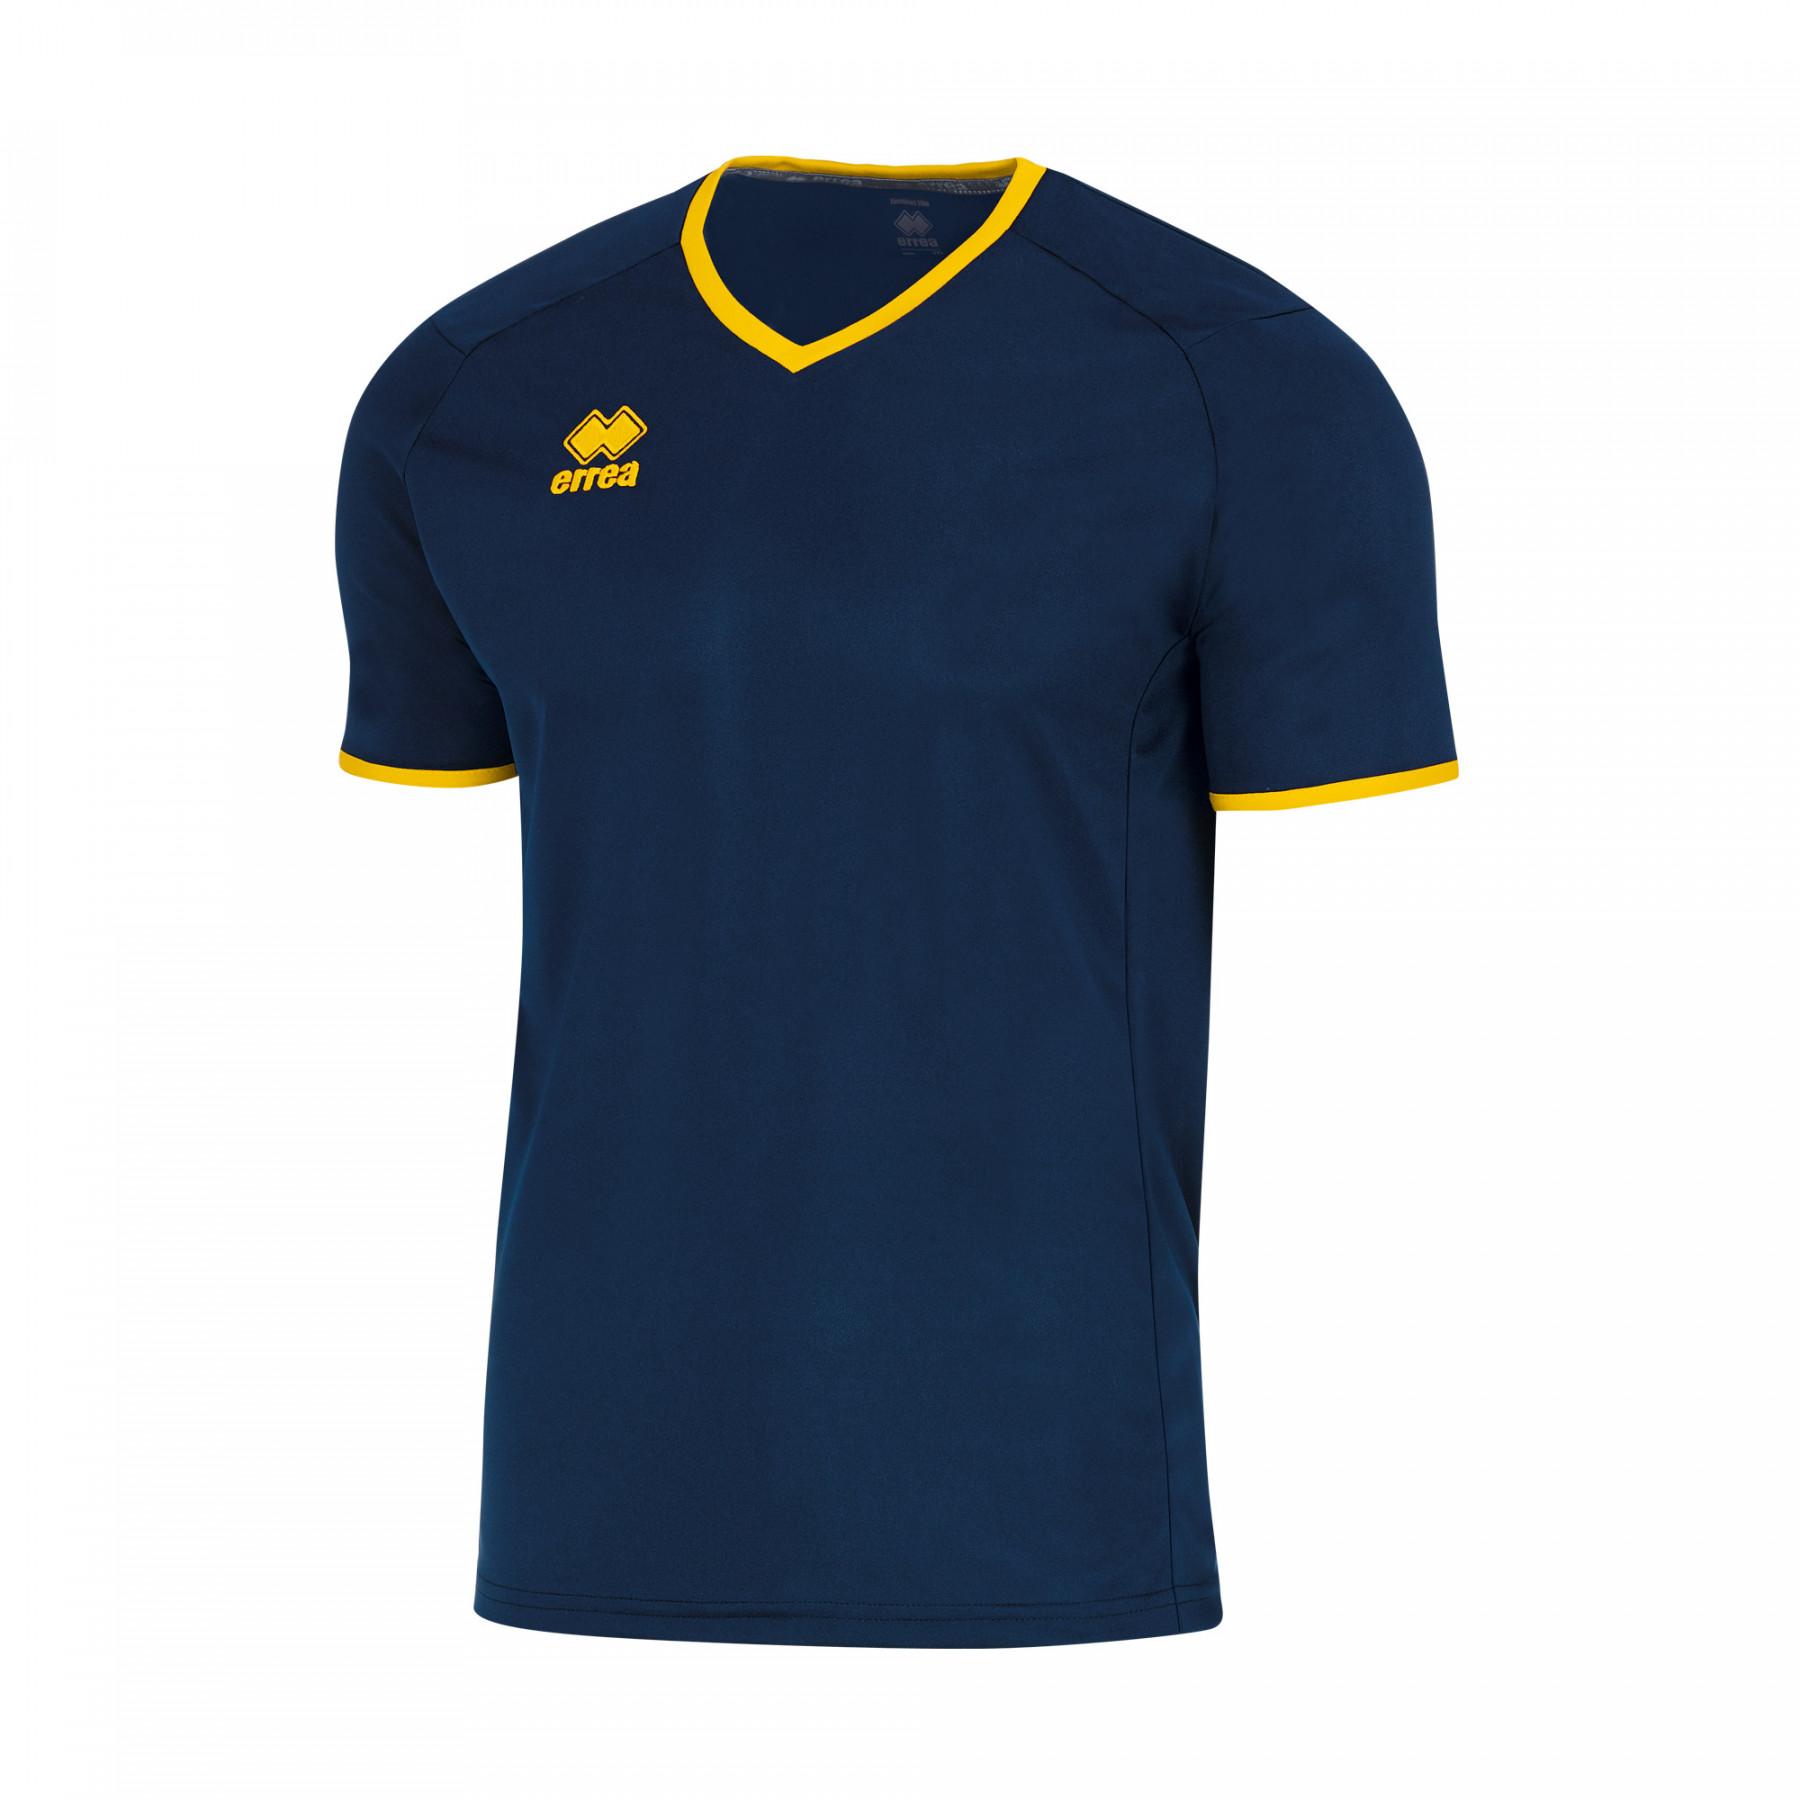 Волейбольная футболка мужская Errea LENNOX Темно-синий/Желтый